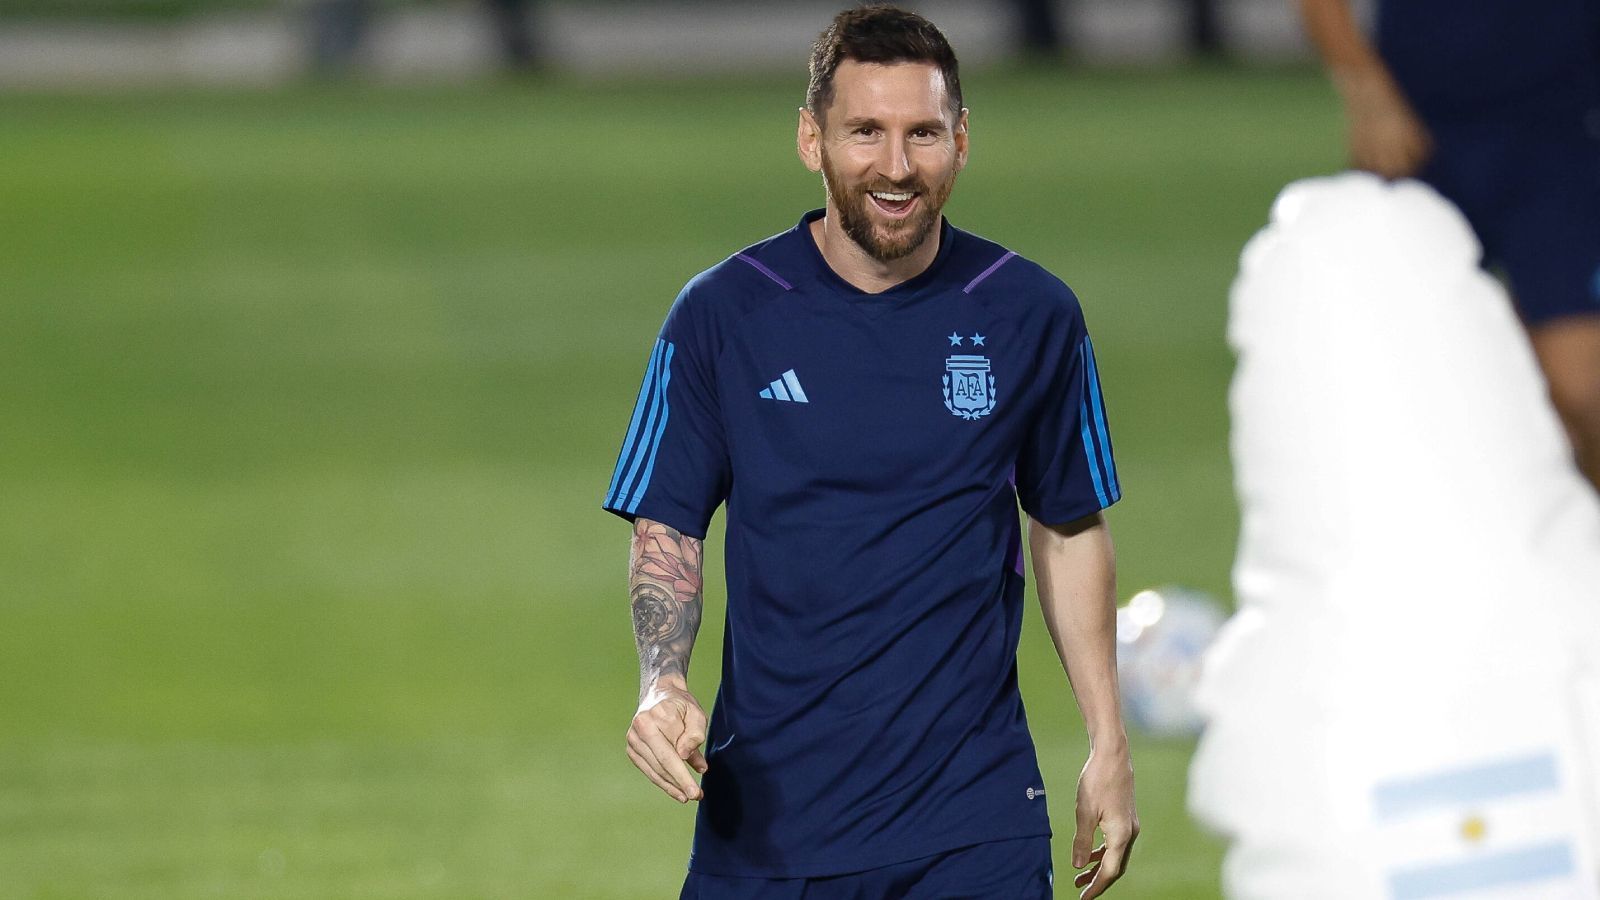 
                <strong>Das Vorbild: Lionel Messi</strong><br>
                "Schon als ich klein war, war Lionel Messi mein fußballerisches Vorbild", erzählt Musiala. Die enge Ballführung und die Stärke im Abschluss sind jedenfalls Gemeinsamkeiten, die er mit dem Argentinier hat.
              